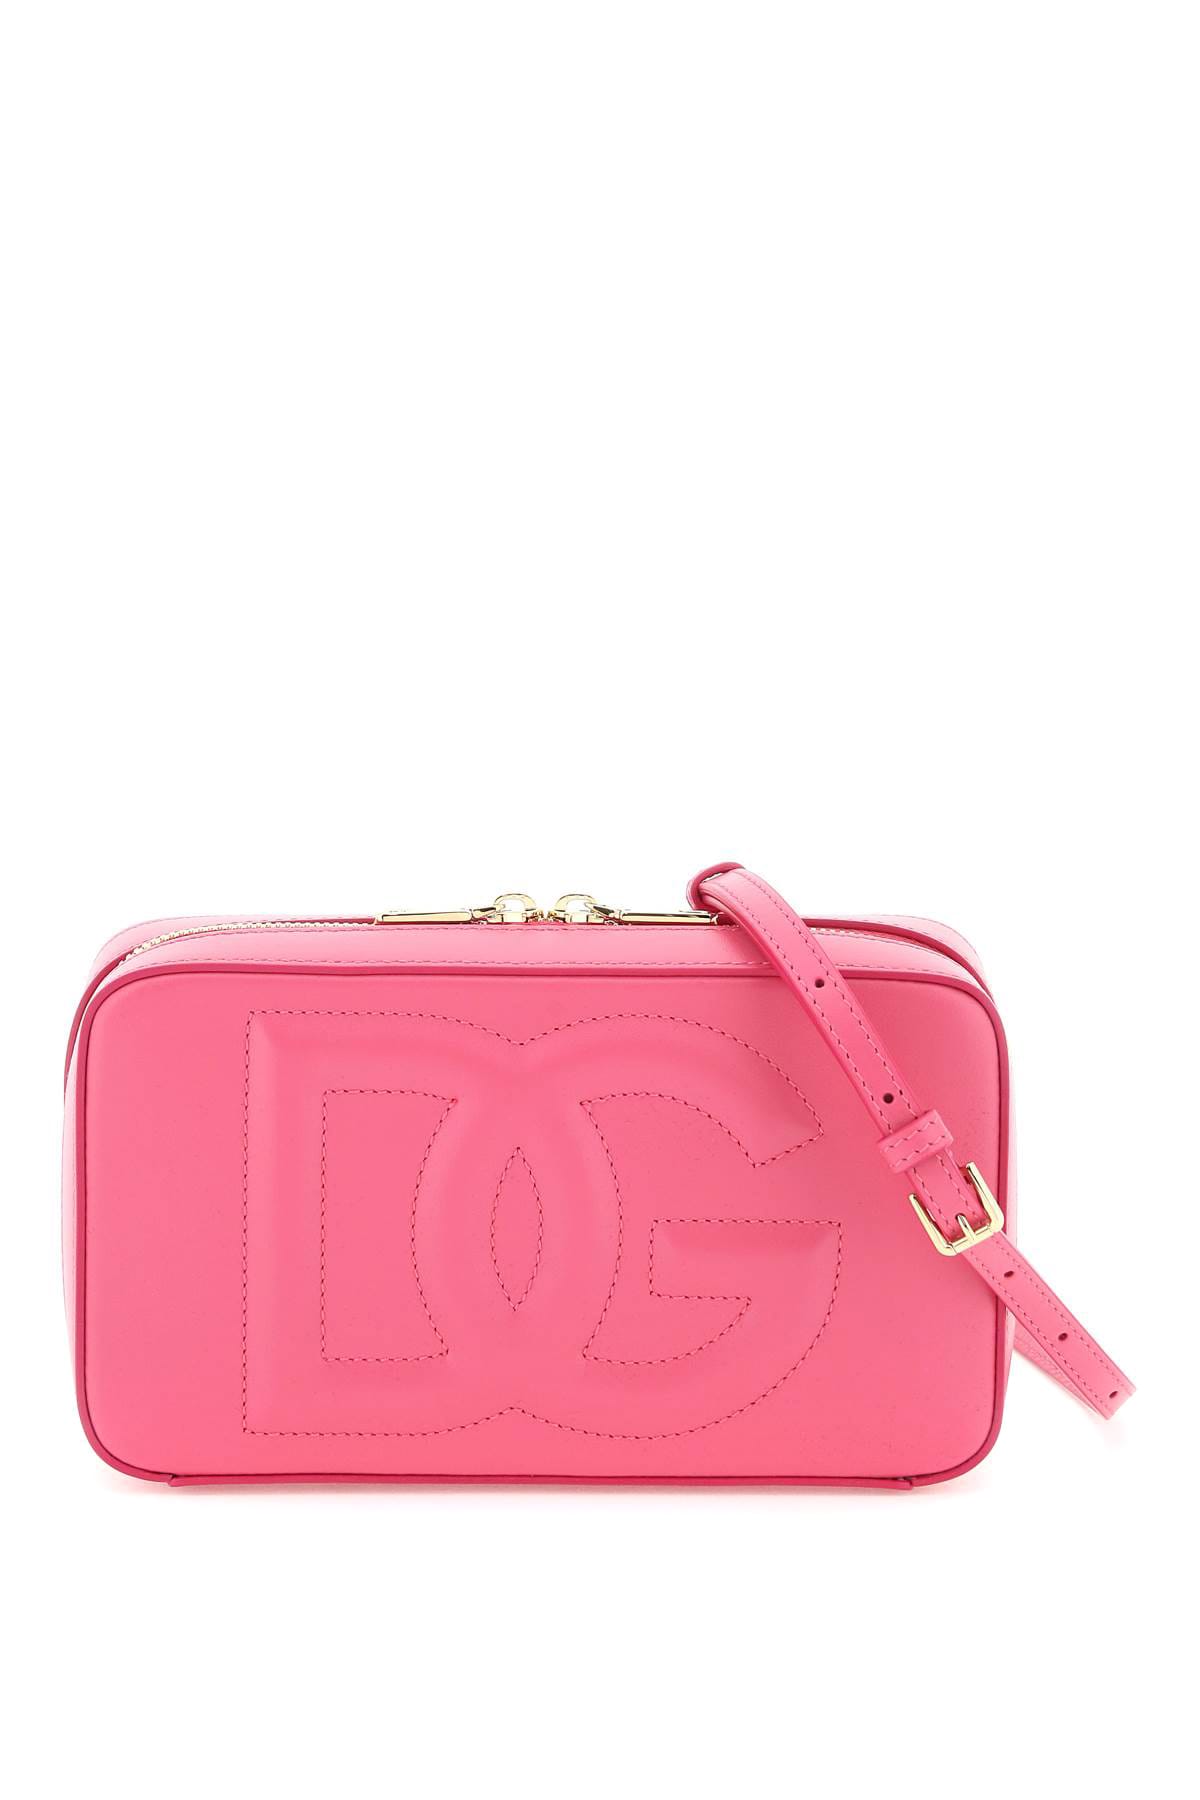 Dolce & Gabbana Leather Camera Bag